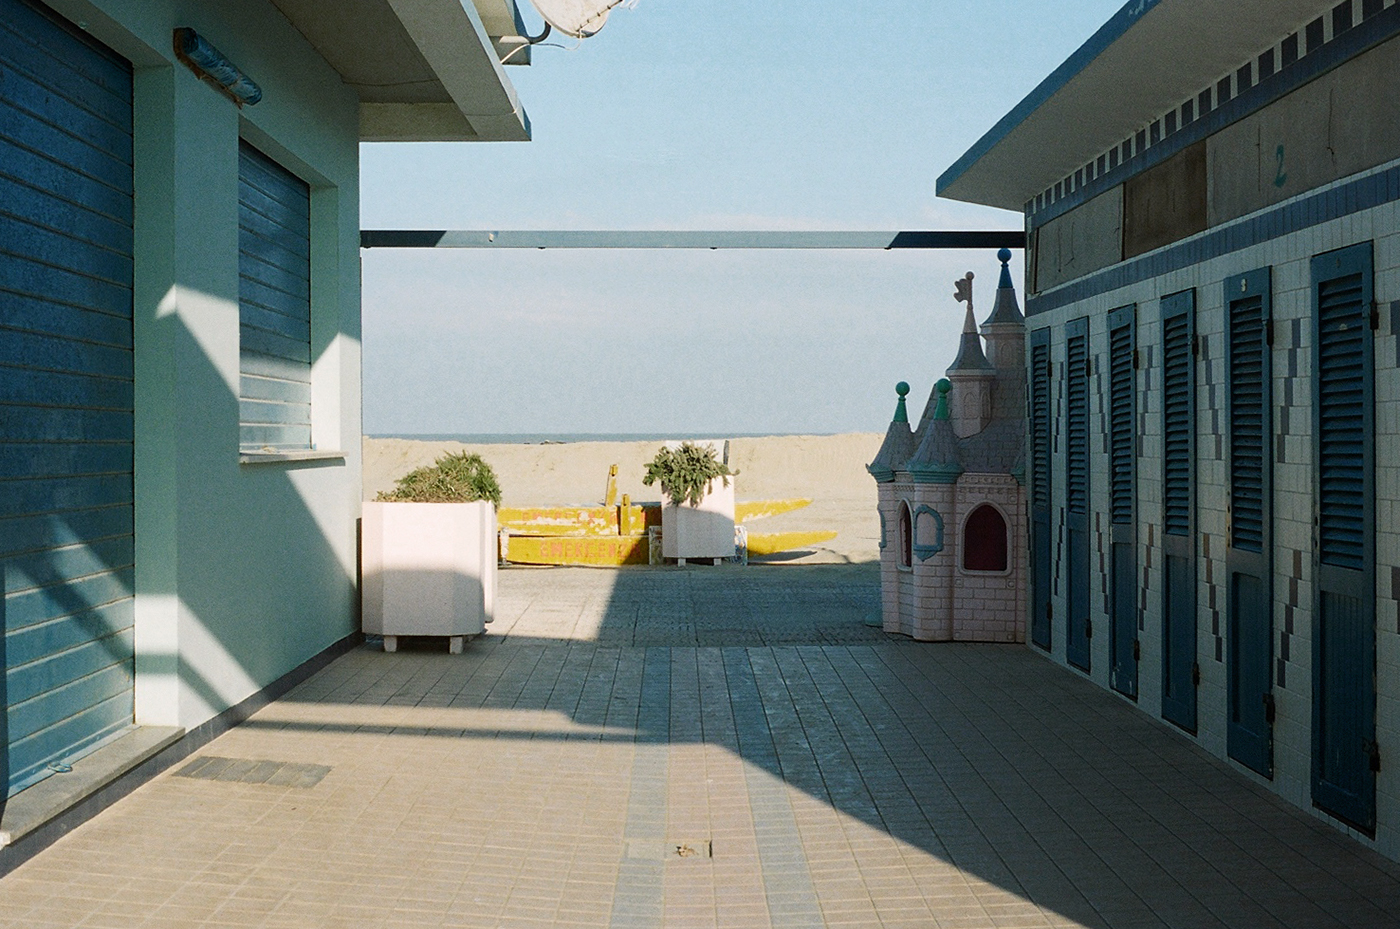 Riviera adriatico emilia romagna beach winter pastel kodak portra Analogue film 35mm silence sea hello ciaomare